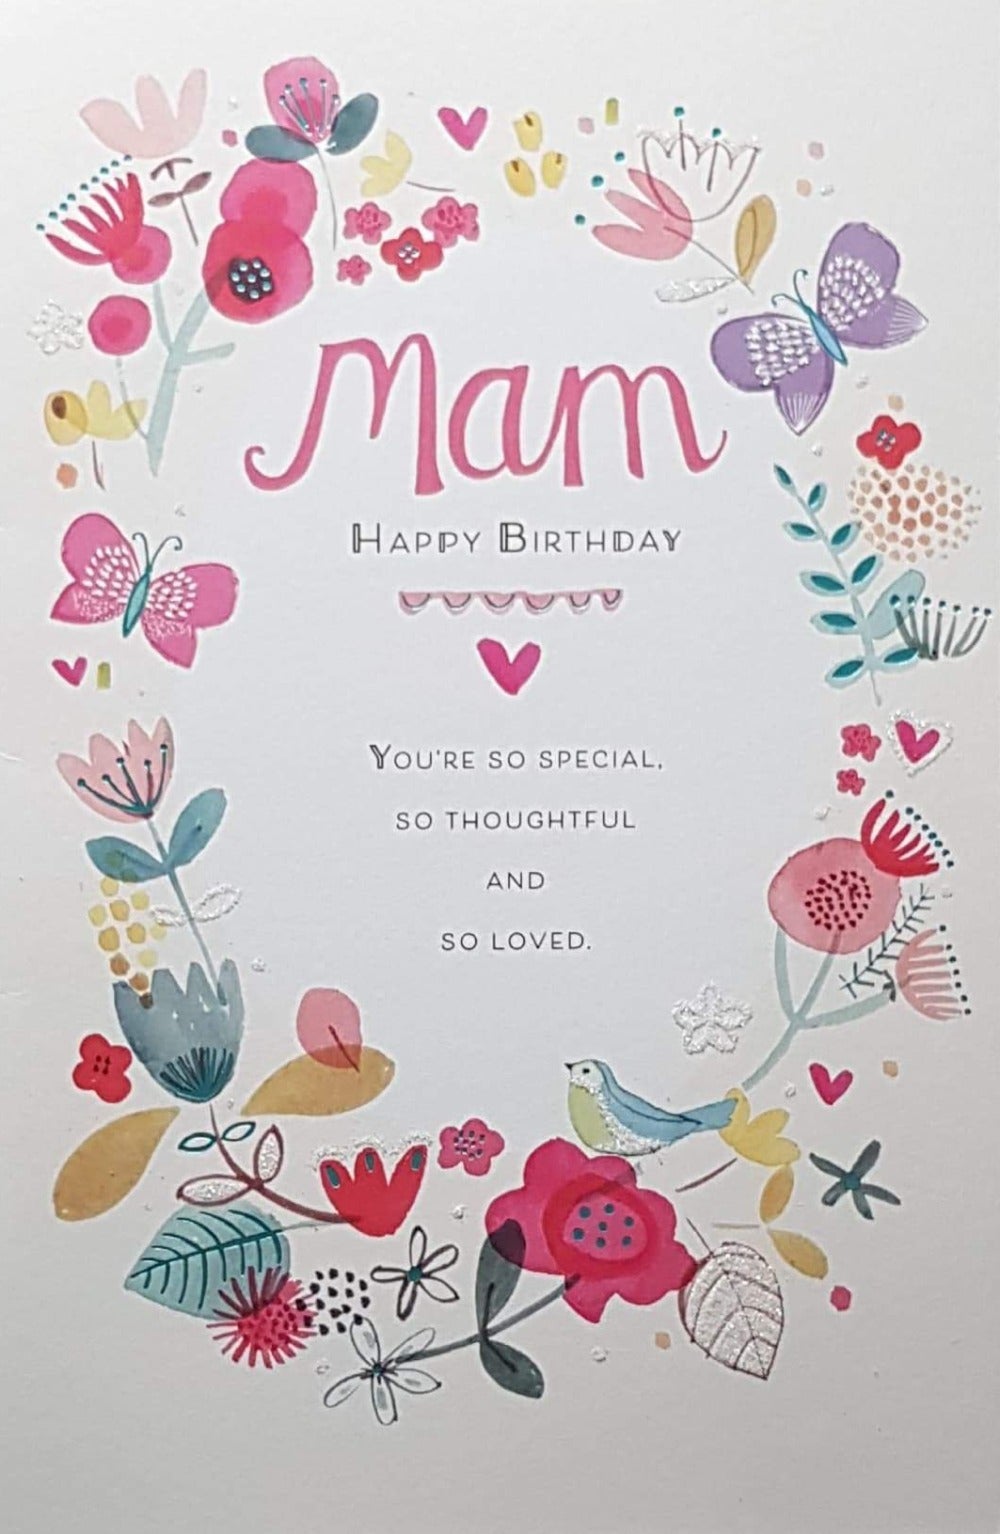 Birthday Card - Mam / A Wreath Of Flowers And Birds